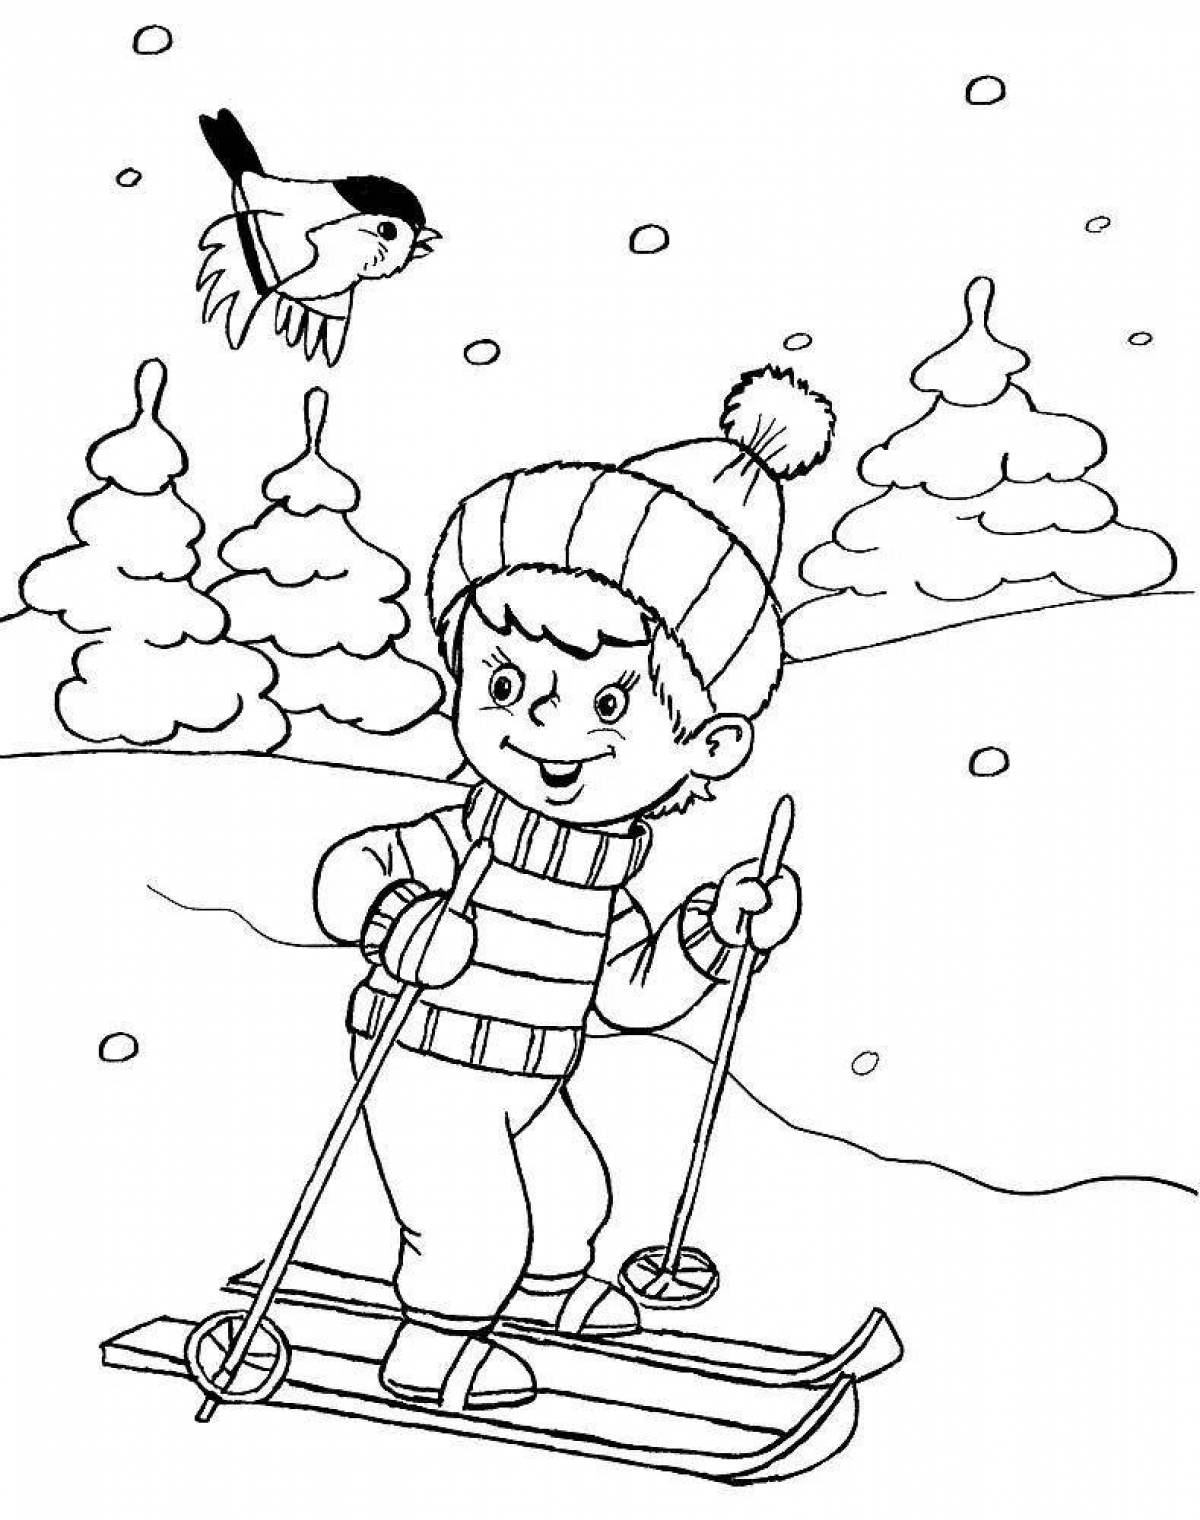 Toddler skis #1